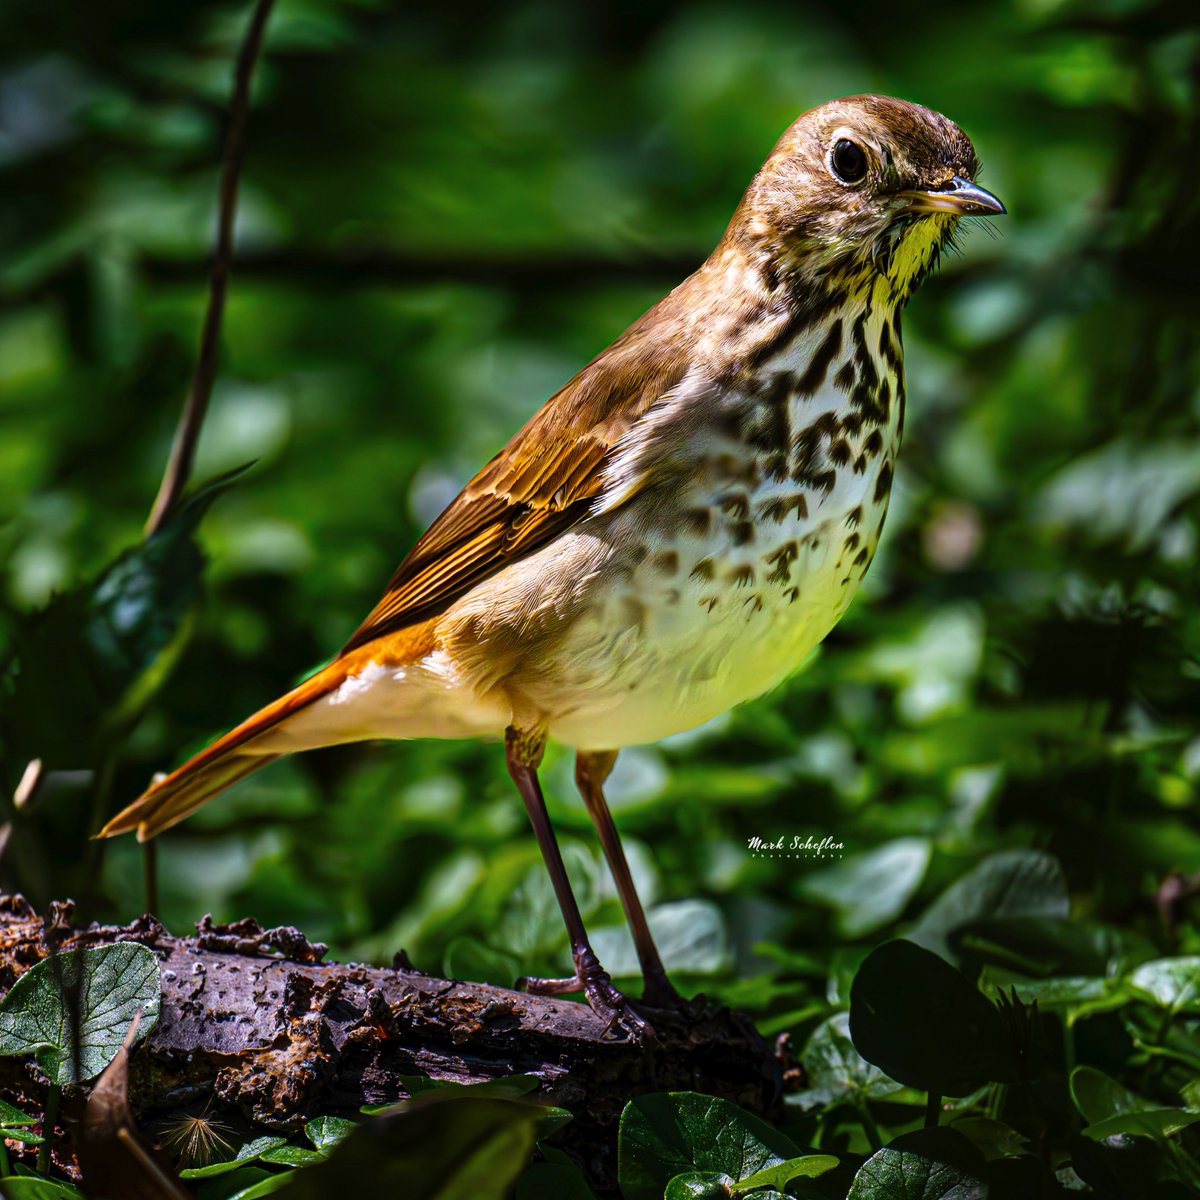 Hermit Thrush, Northwoods Central Park, NYC  #birdcpp #TwitterNatureCommunity #birdsofinstagram #britishnatureguide #naturephotography #birdphotography #twitterphotography #wildbirdphotography #nikonphotography #NatureBeauty #nycaudubon